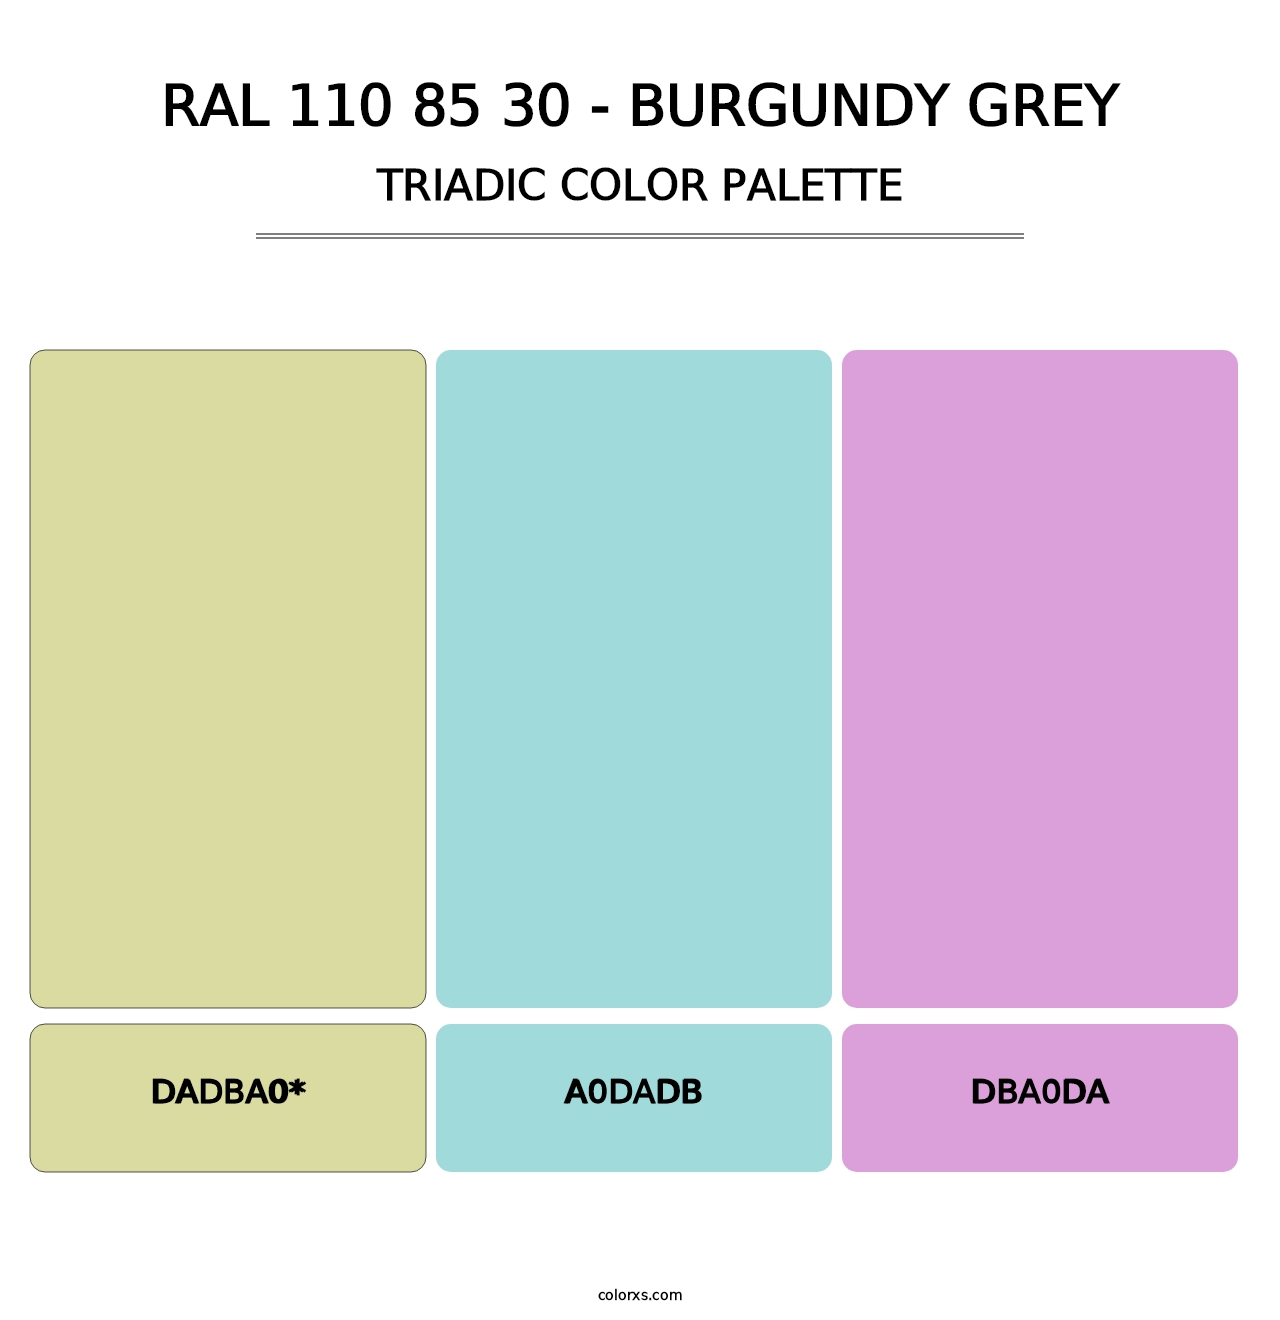 RAL 110 85 30 - Burgundy Grey - Triadic Color Palette